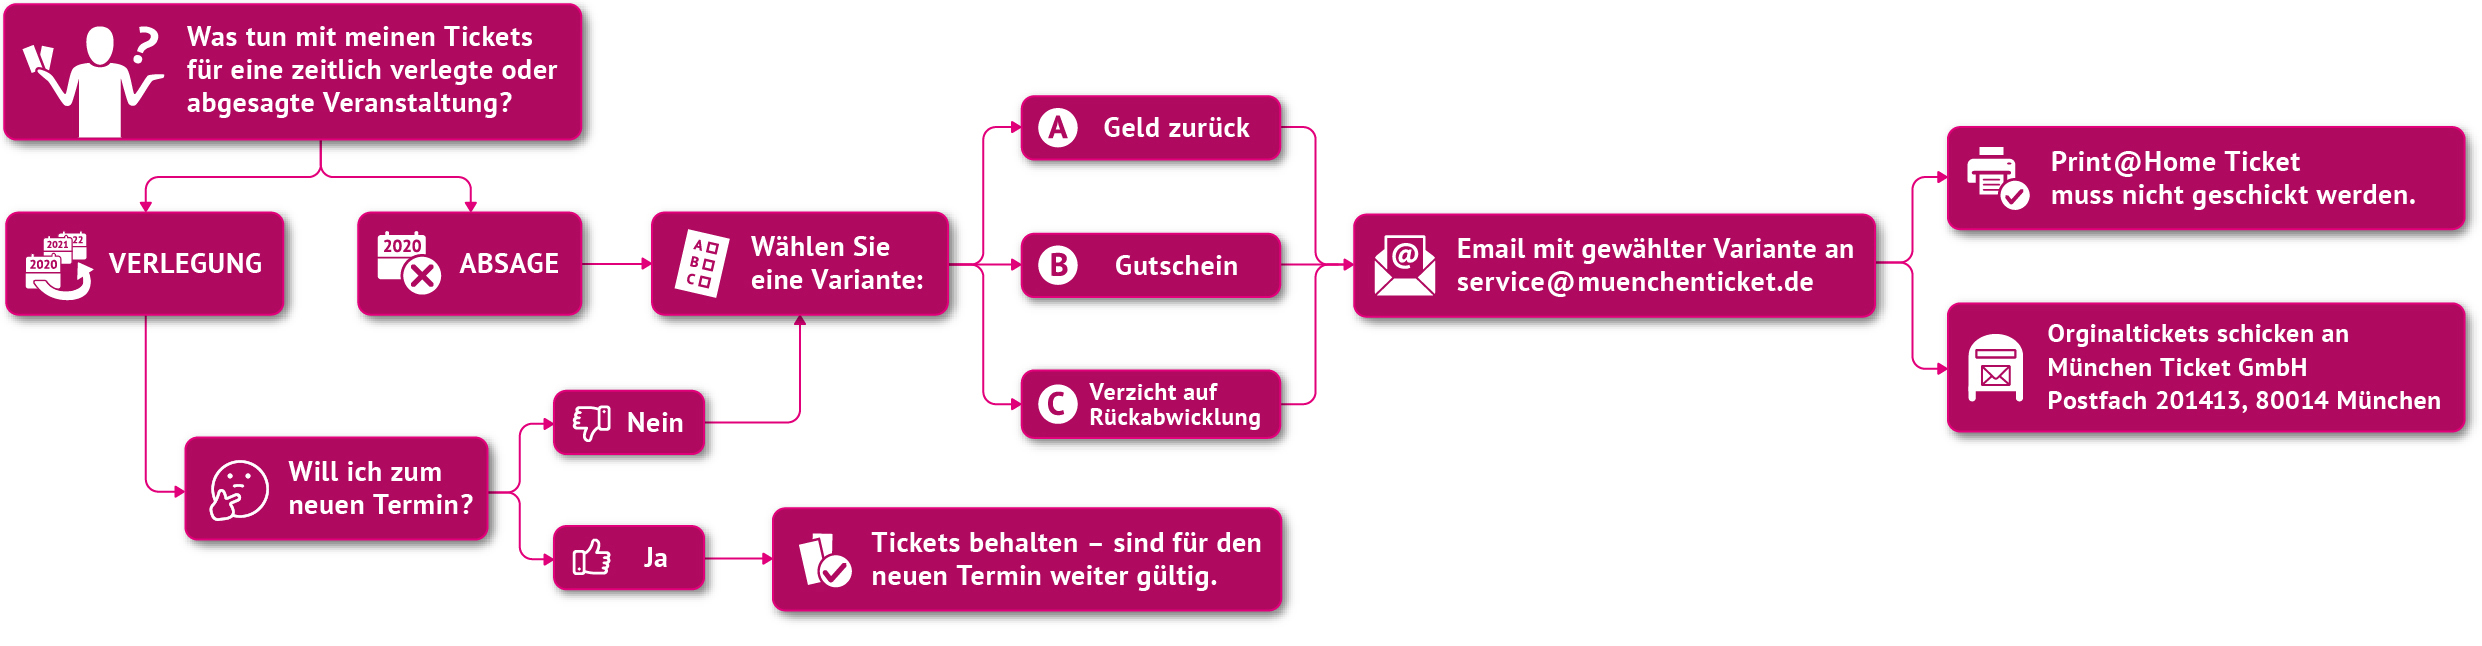 Kundeninformtion zur Rückabwicklung ©München Ticket GmbH – Alle Rechte vorbehalten